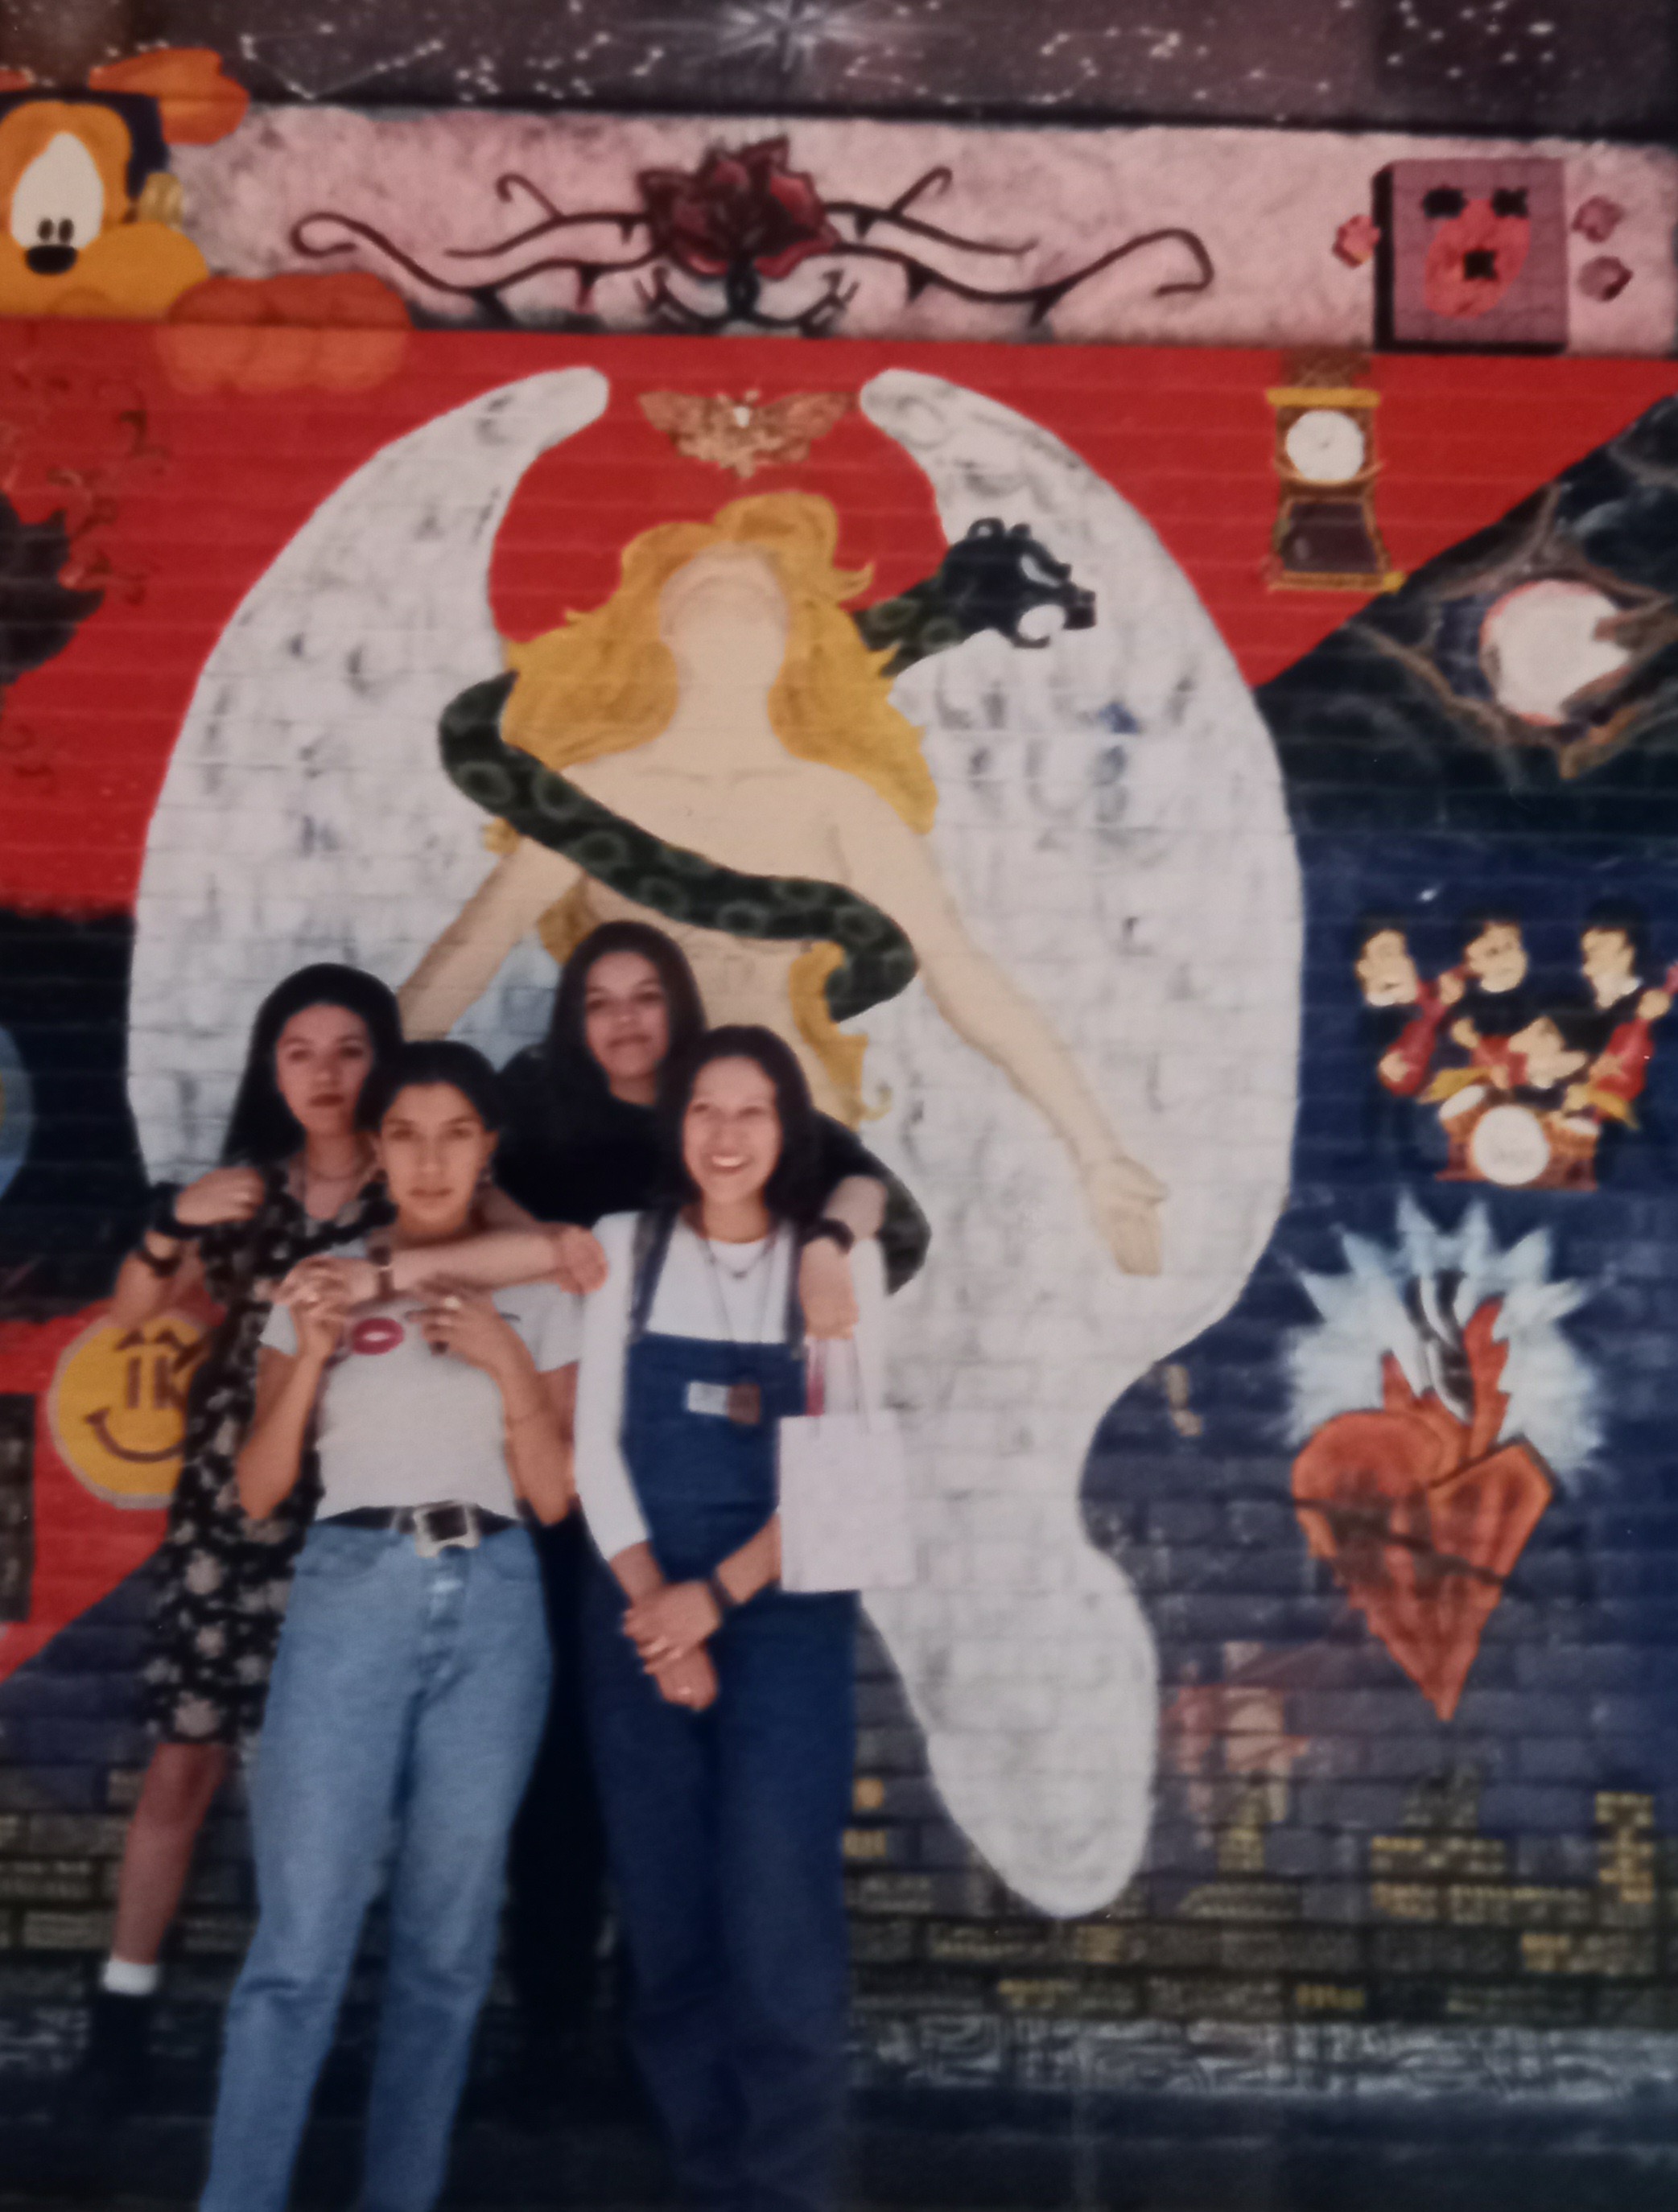 Amigas por siempre, Claudia Morales, Azucena Hernández, Ivonne Villarreal y Yessica González, en la explanada de 5tos, 1996.